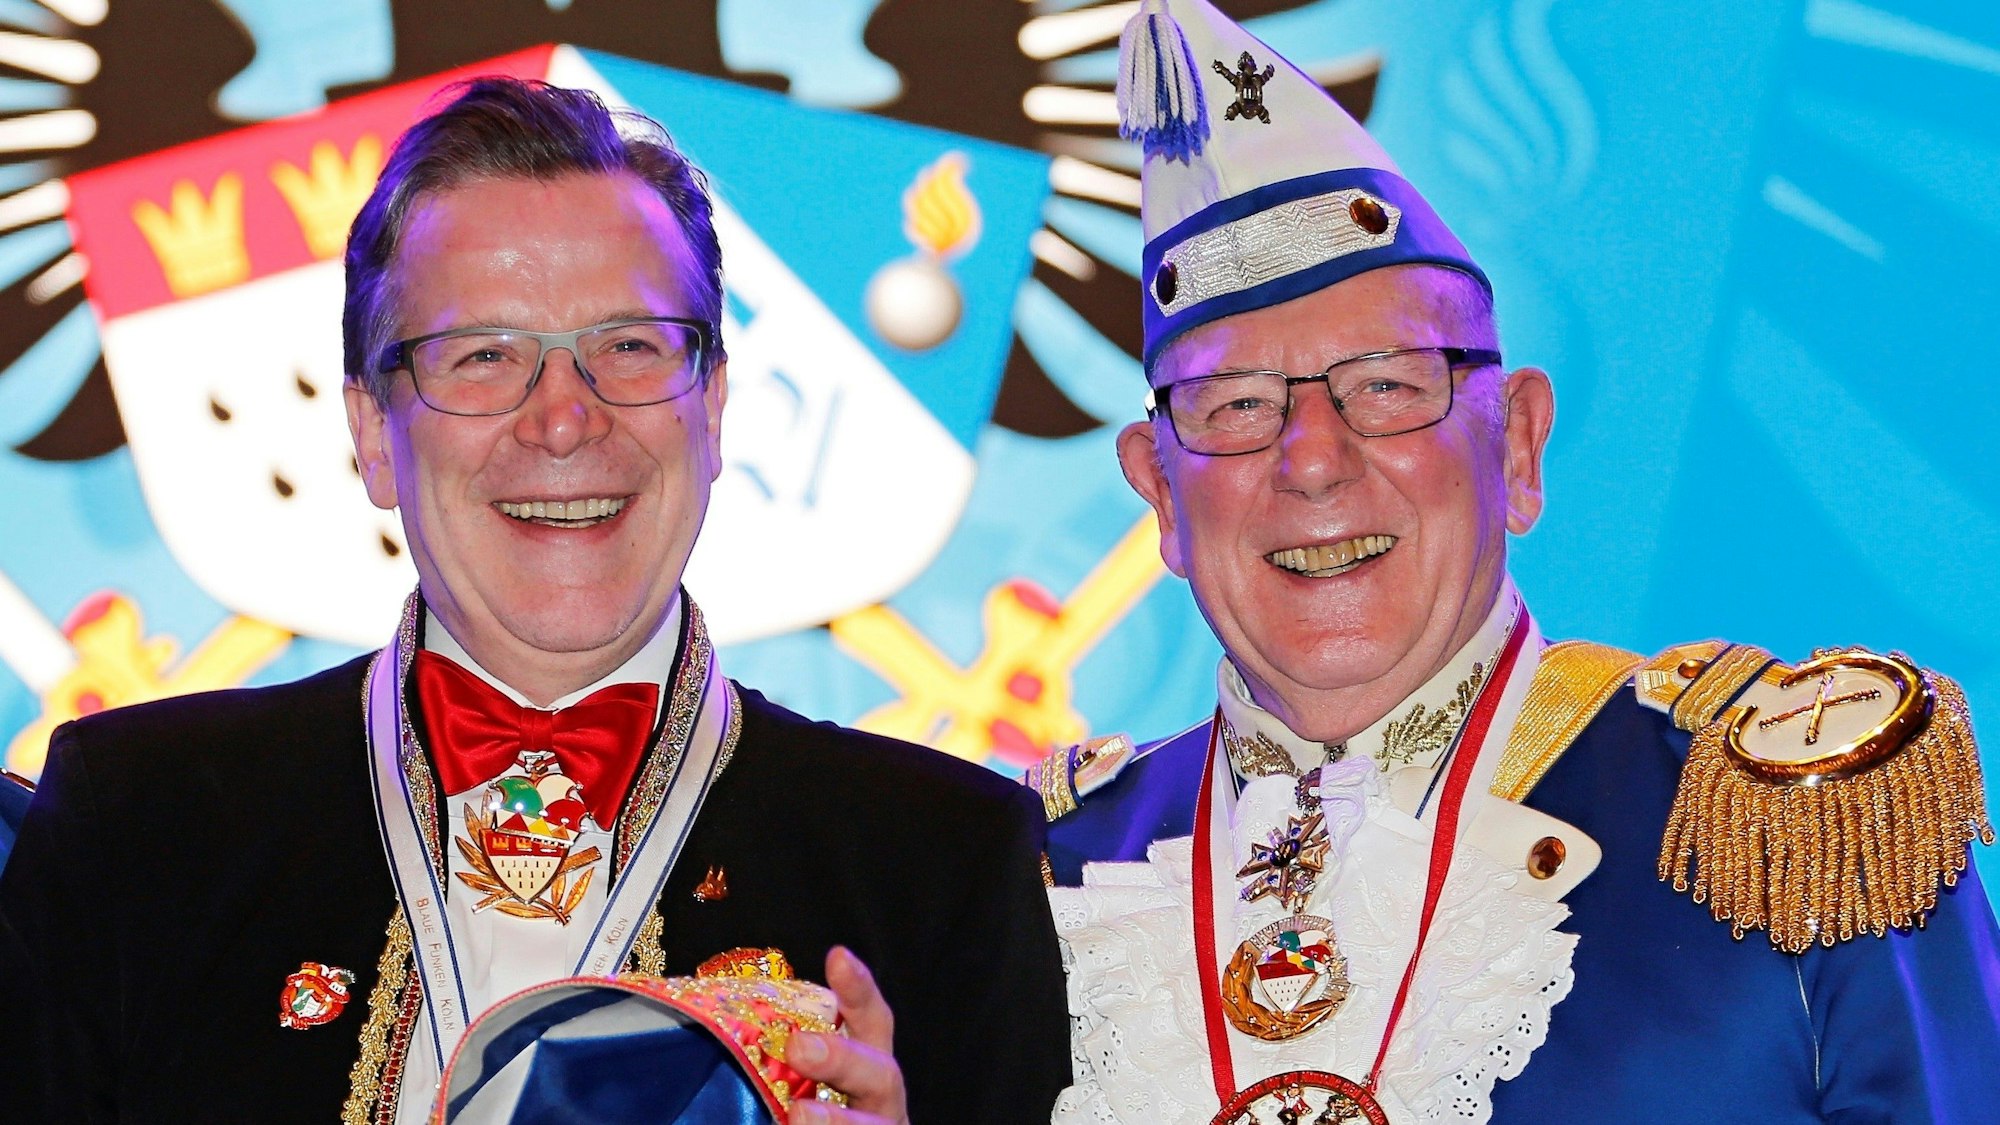 Christoph und Fro Kuckelkorn in Karnevals-Outfits auf einer Bühne, beide lächeln.